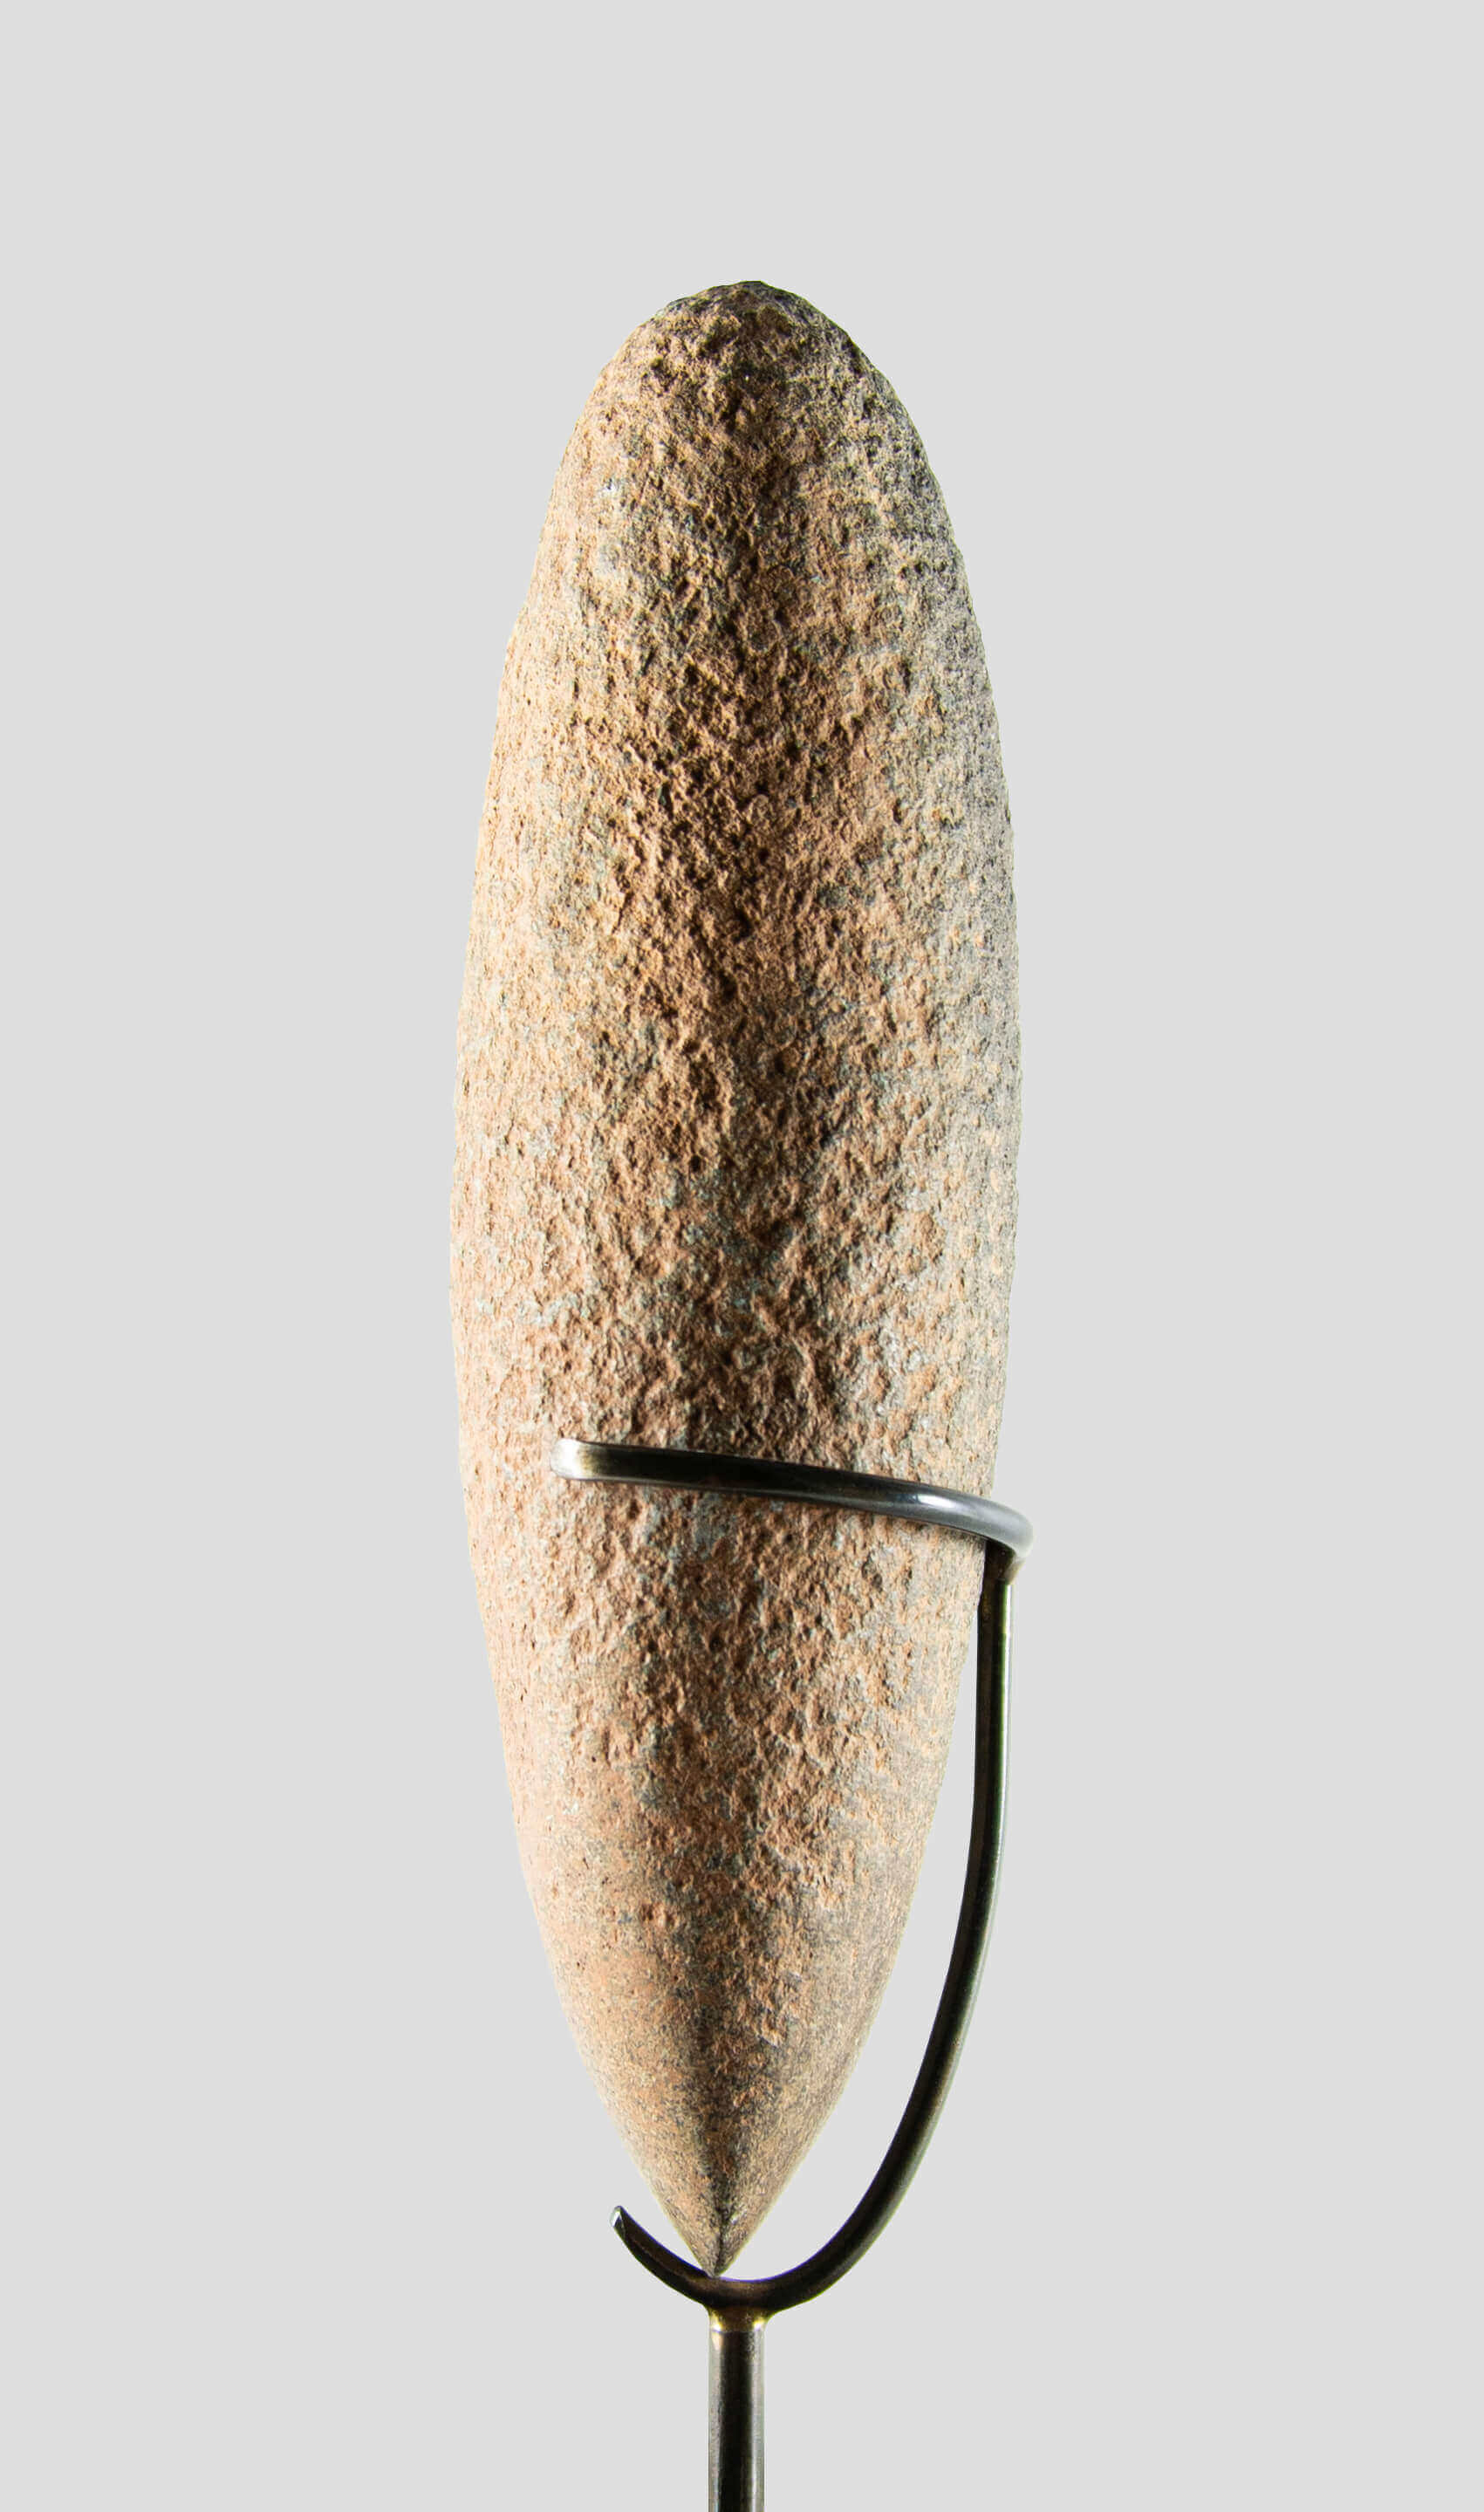 アーティファクト 新石器時代 カプシアン 手斧 [紀元前 8,500 年] 220mm